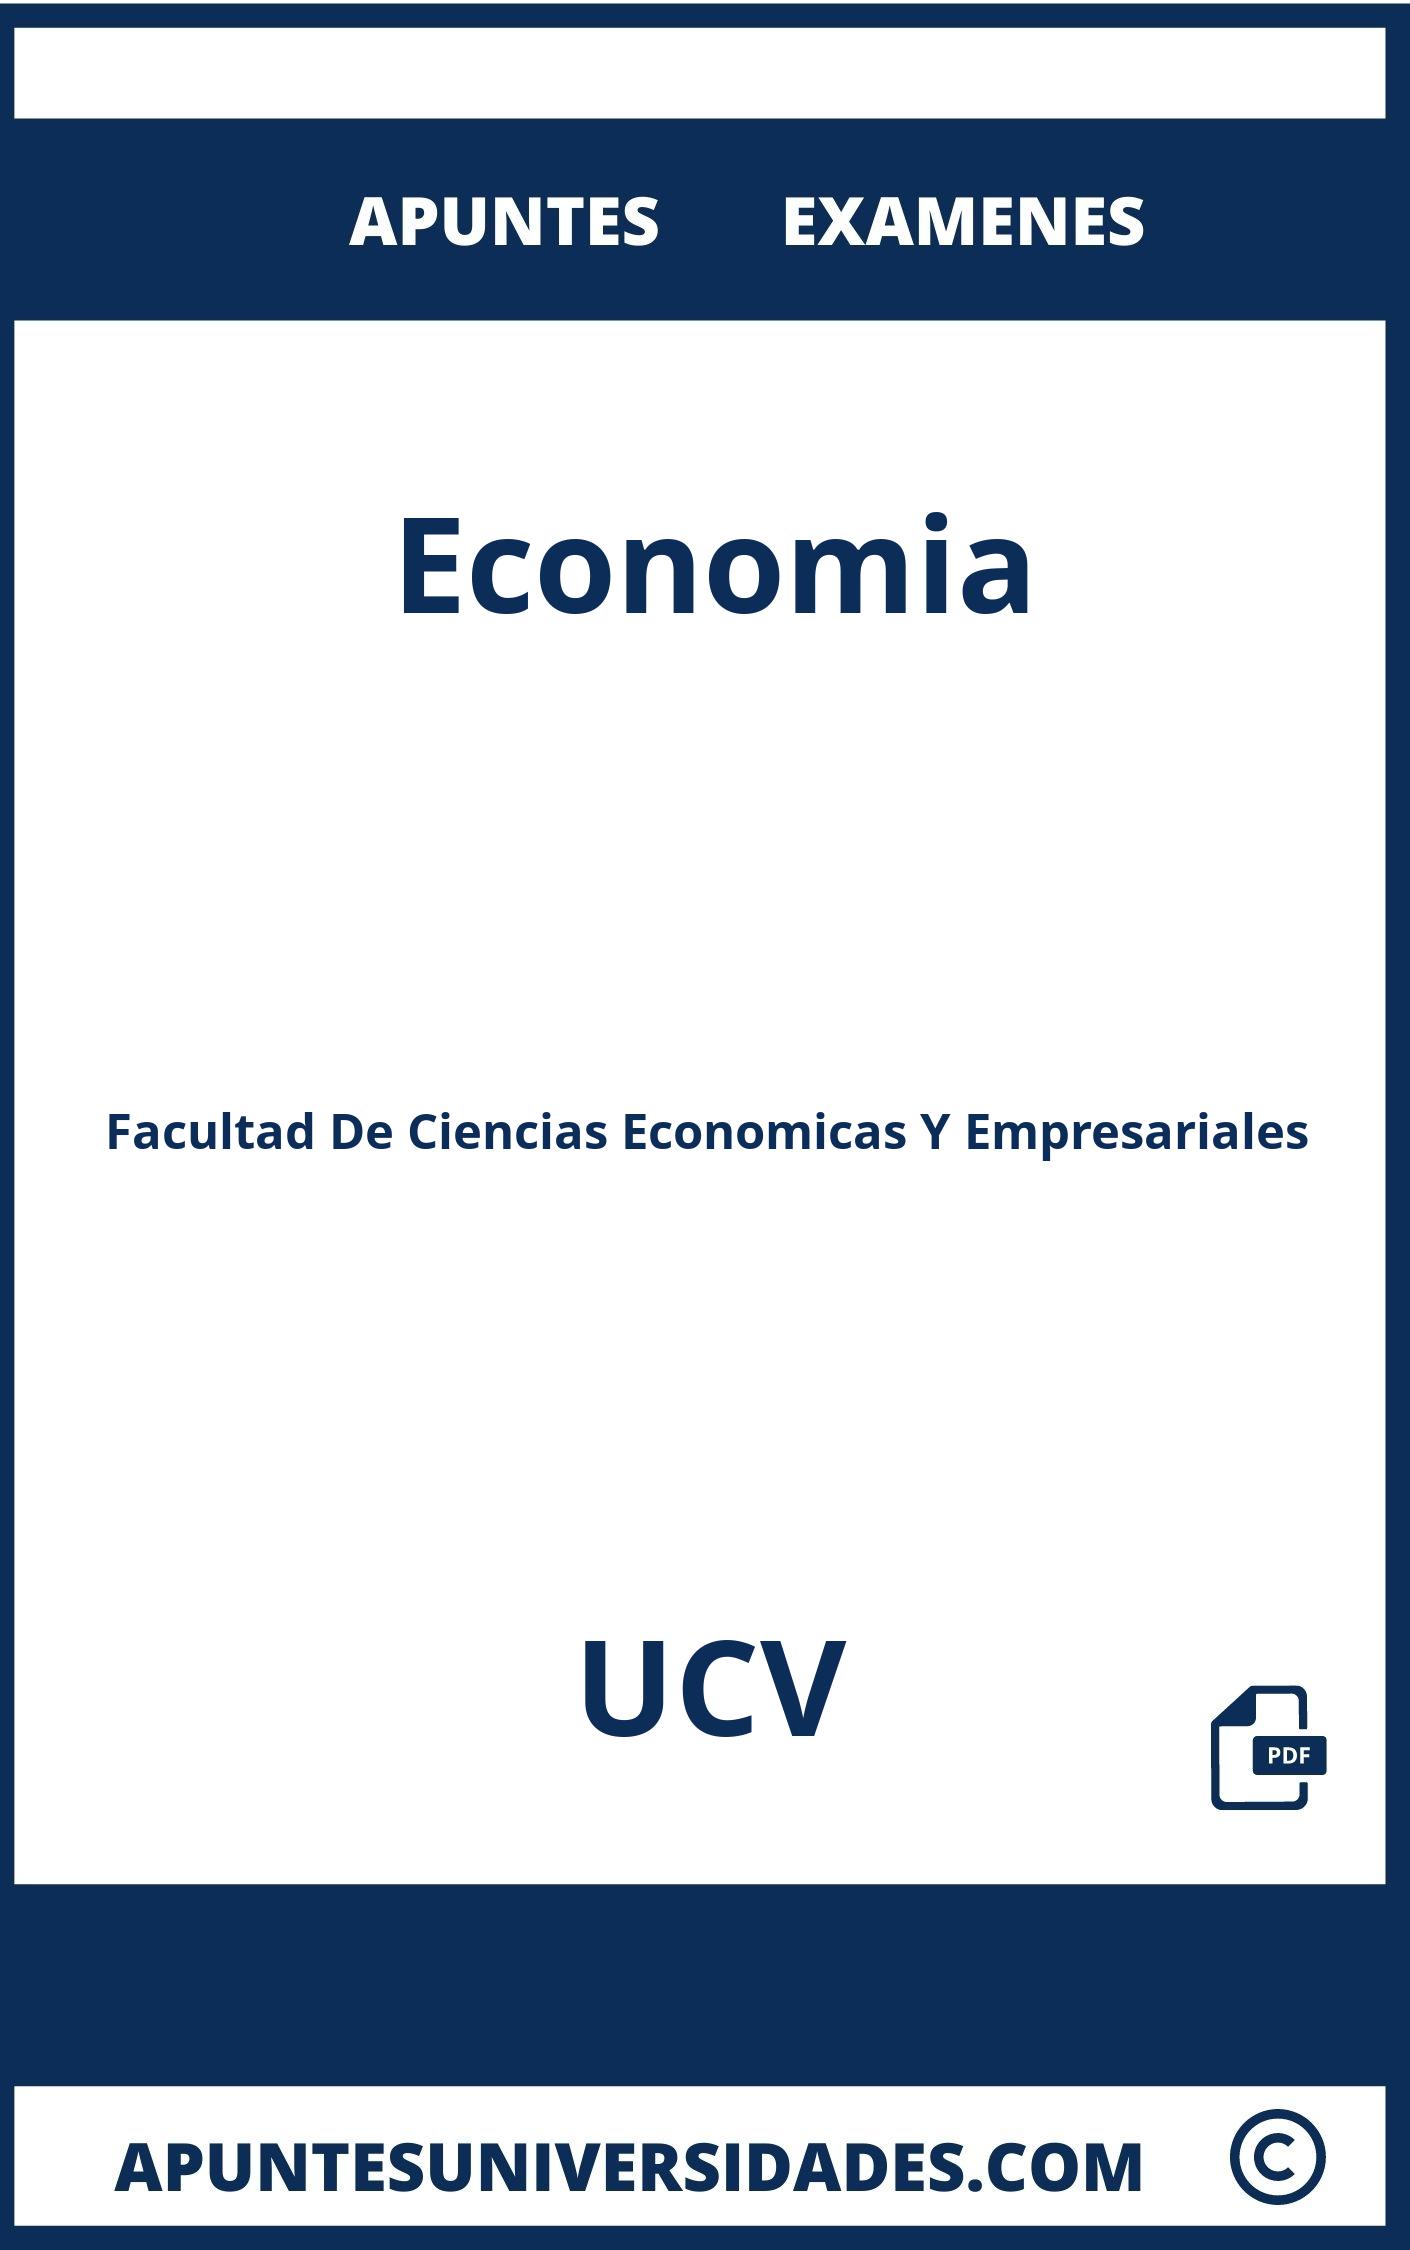 Examenes Economia UCV y Apuntes